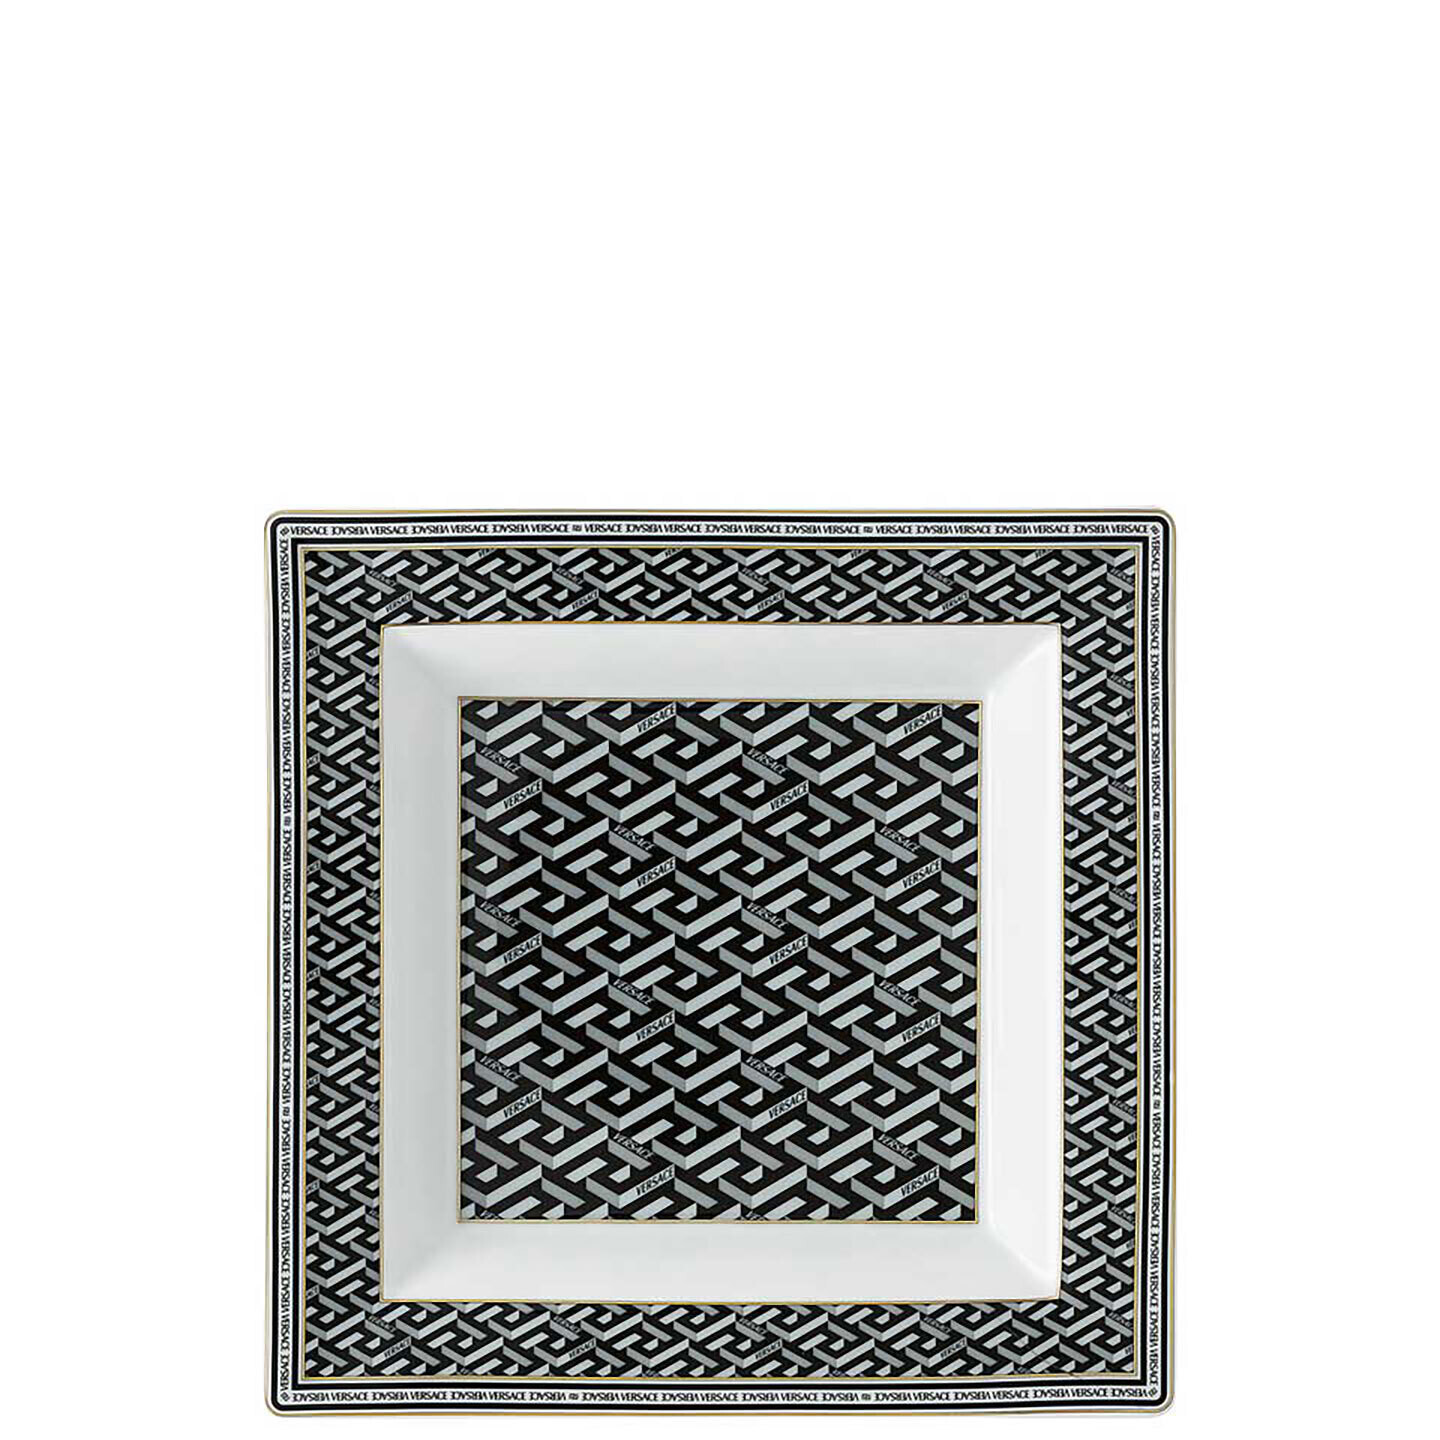 Versace La Greca Signature Black Tray Square 14085-403765-25822